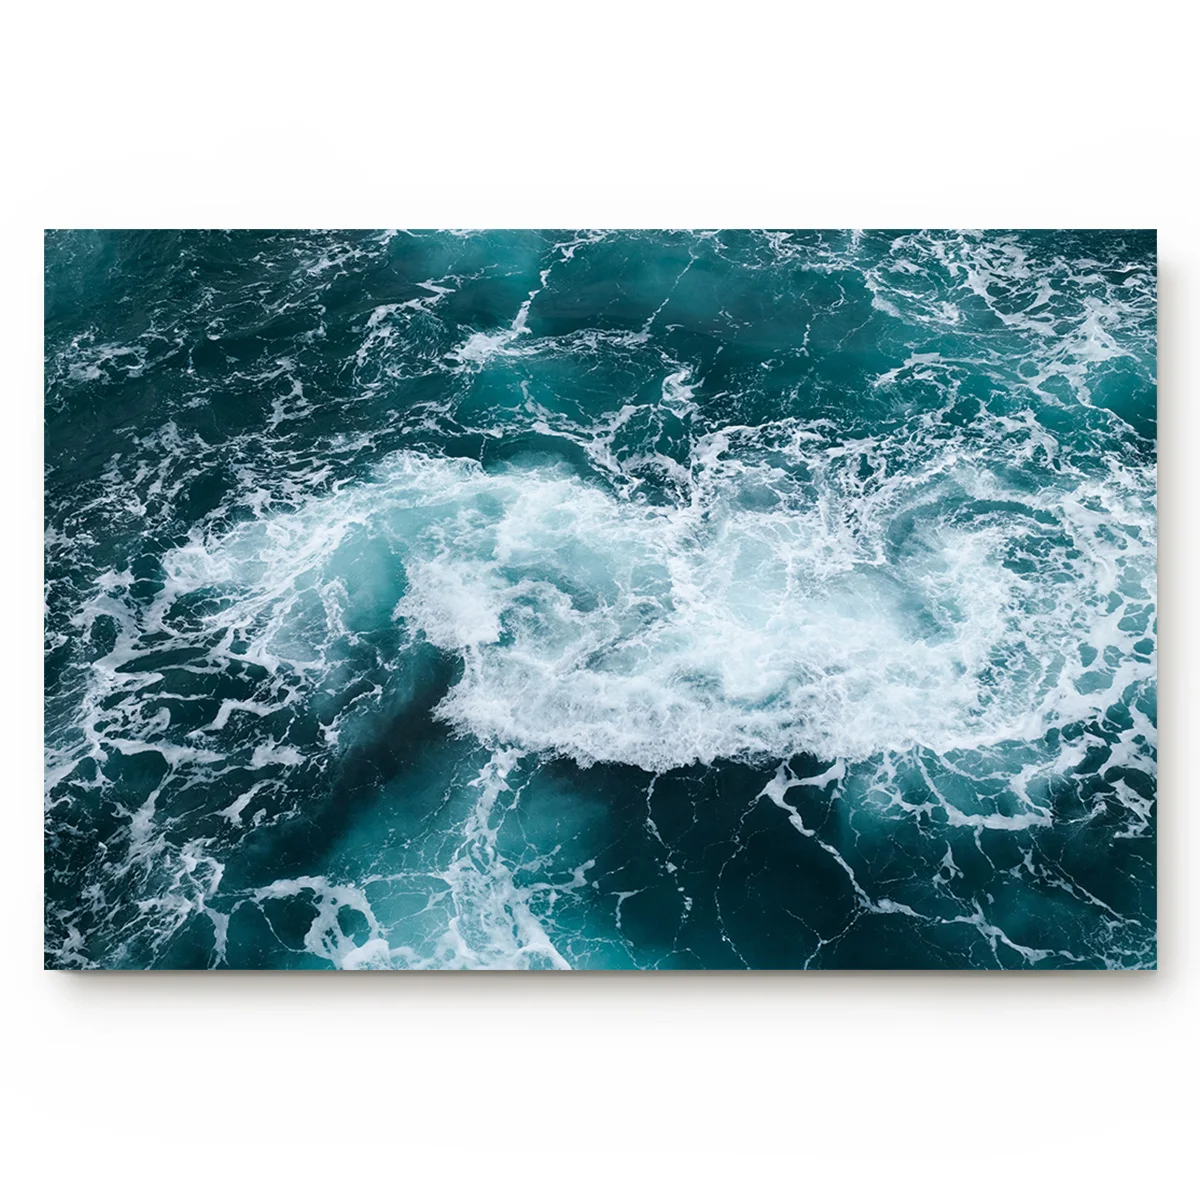 Картина на канве Аквамарин воды море под питомцем миска для воды еды коврики для входа в дорогу аксессуары для ванной набор грязи